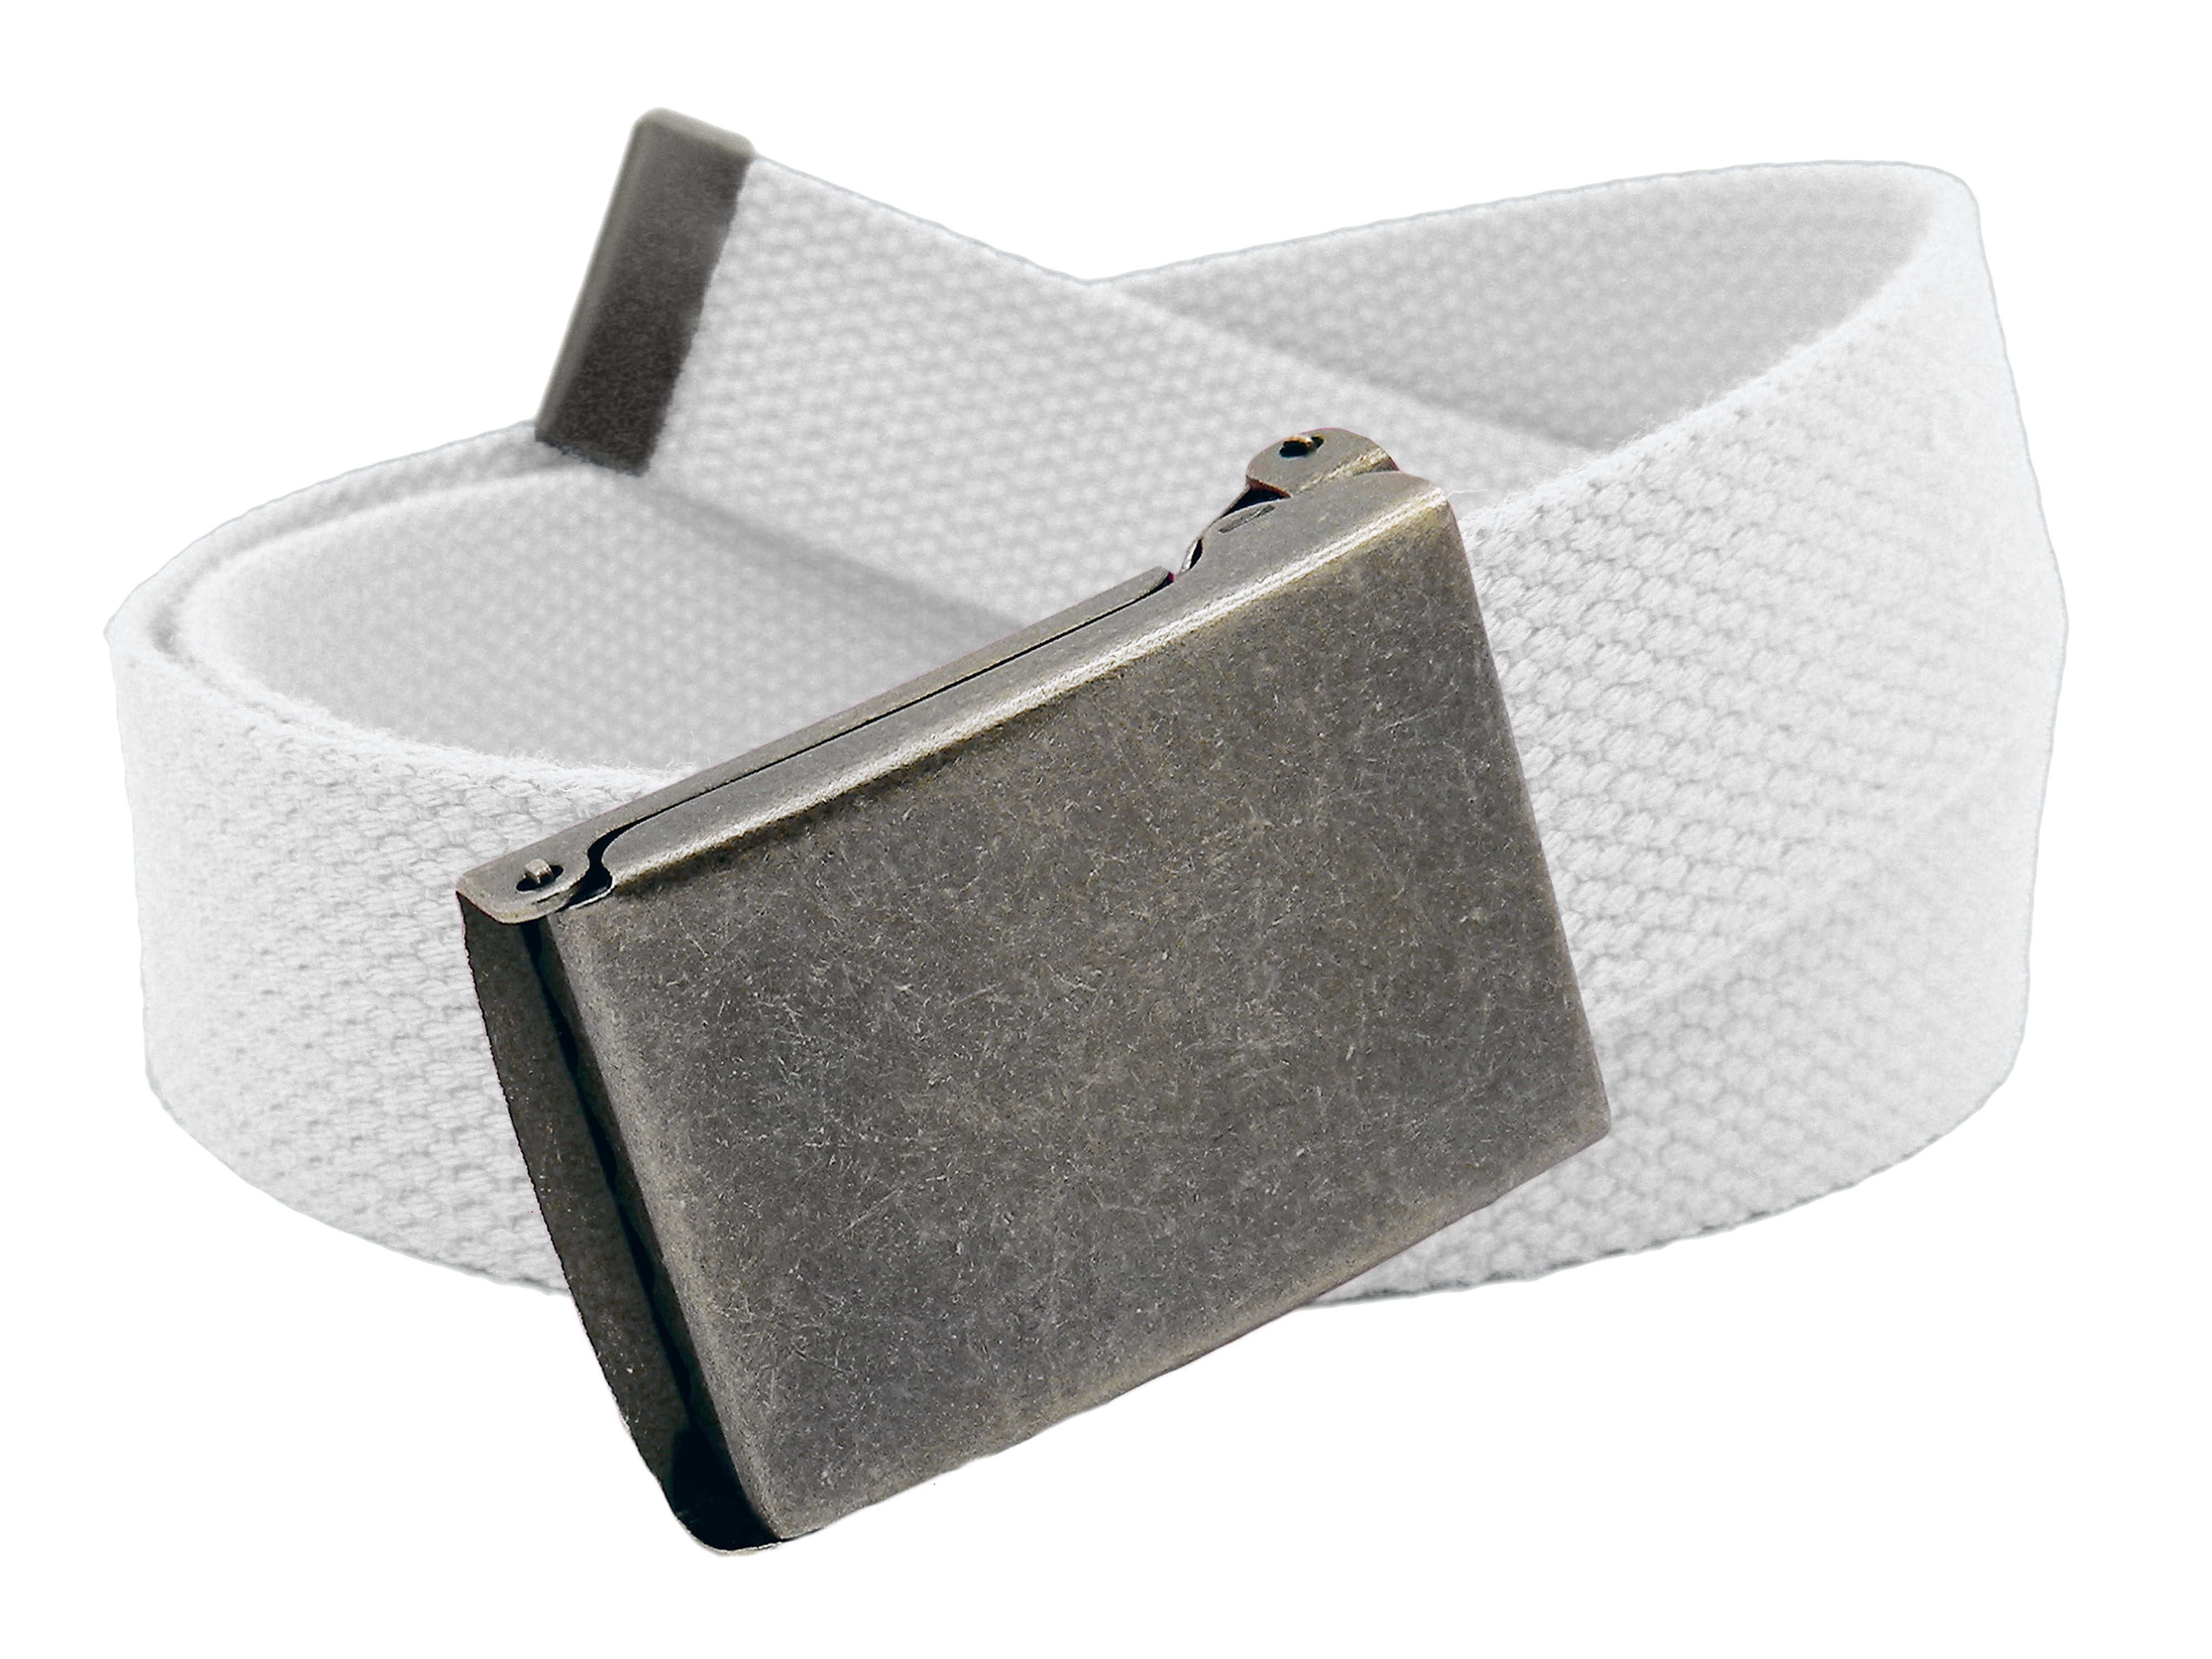 2Pcs Adjustable Canvas Web Belt with Flip Top Buckle for Child Boys Kids Cotton Canvas Belts 